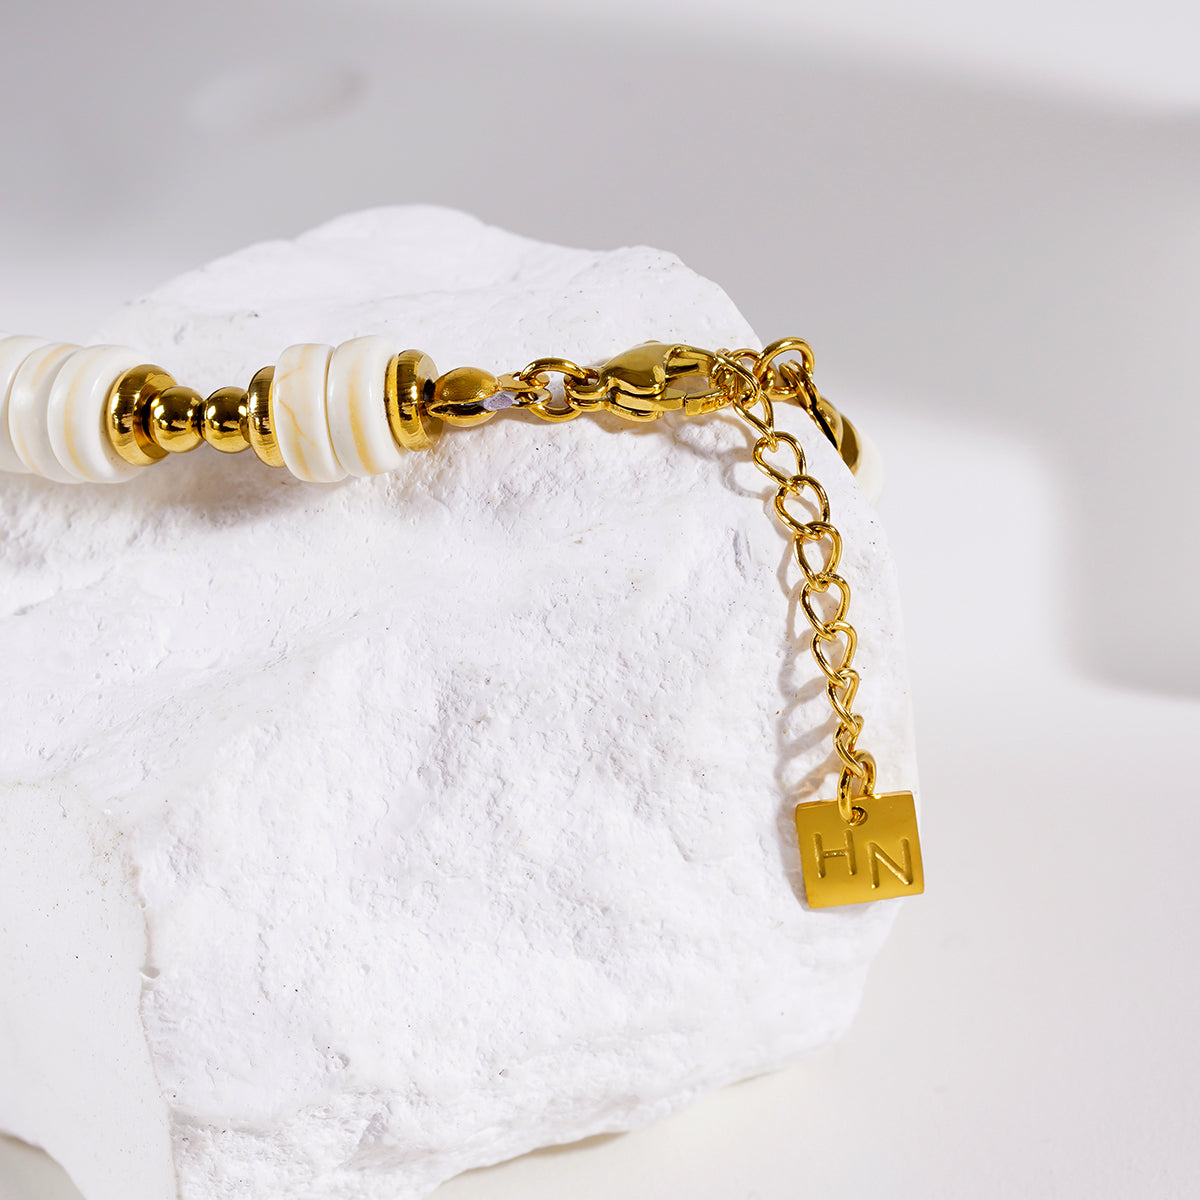 Style GODIVA 9409: White Turquoise Stone & Gold Beaded Modern Boho Bracelet